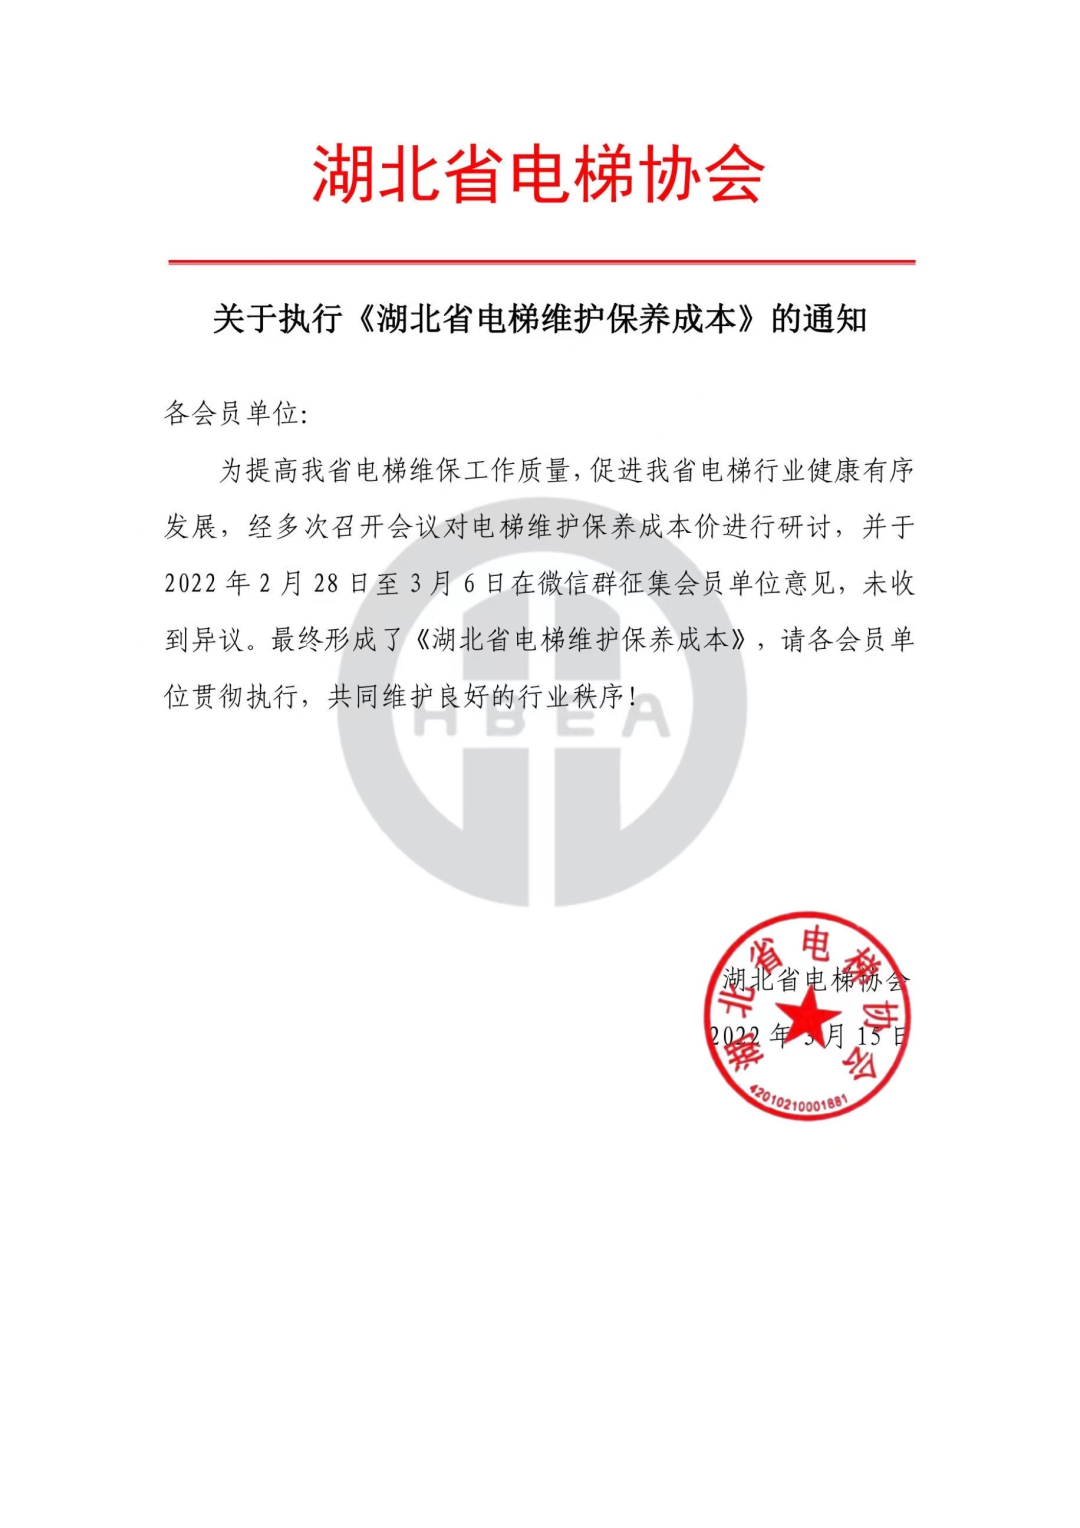 关于执行《湖北省电梯维护保养成本》的通知2022年3月15日